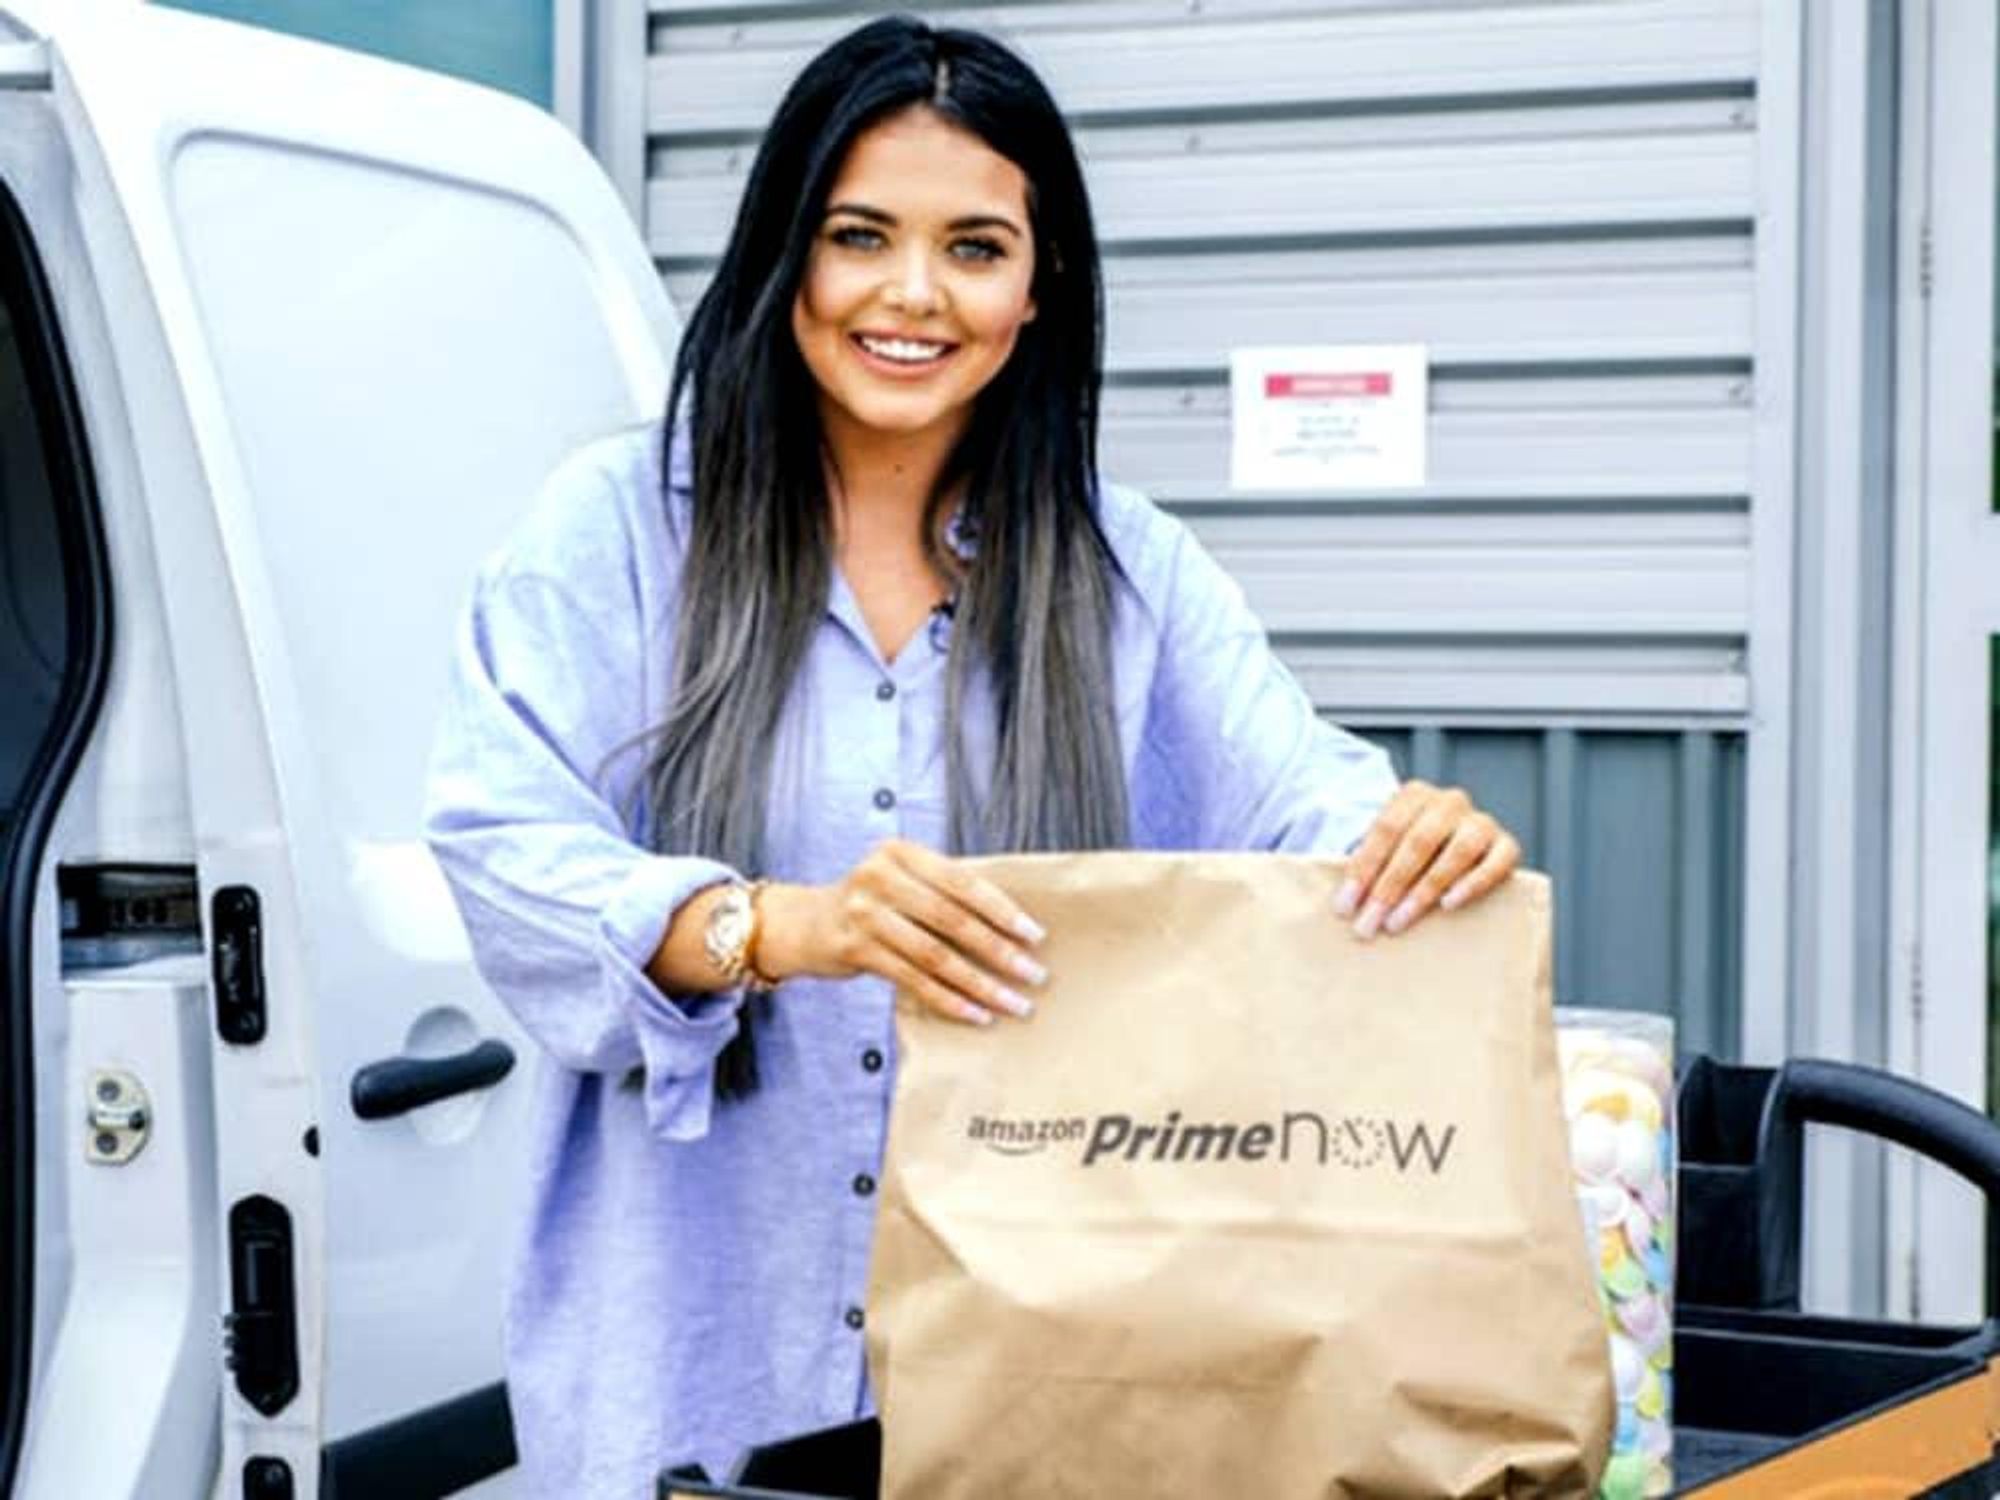 Houston Amazon Prime Now bag